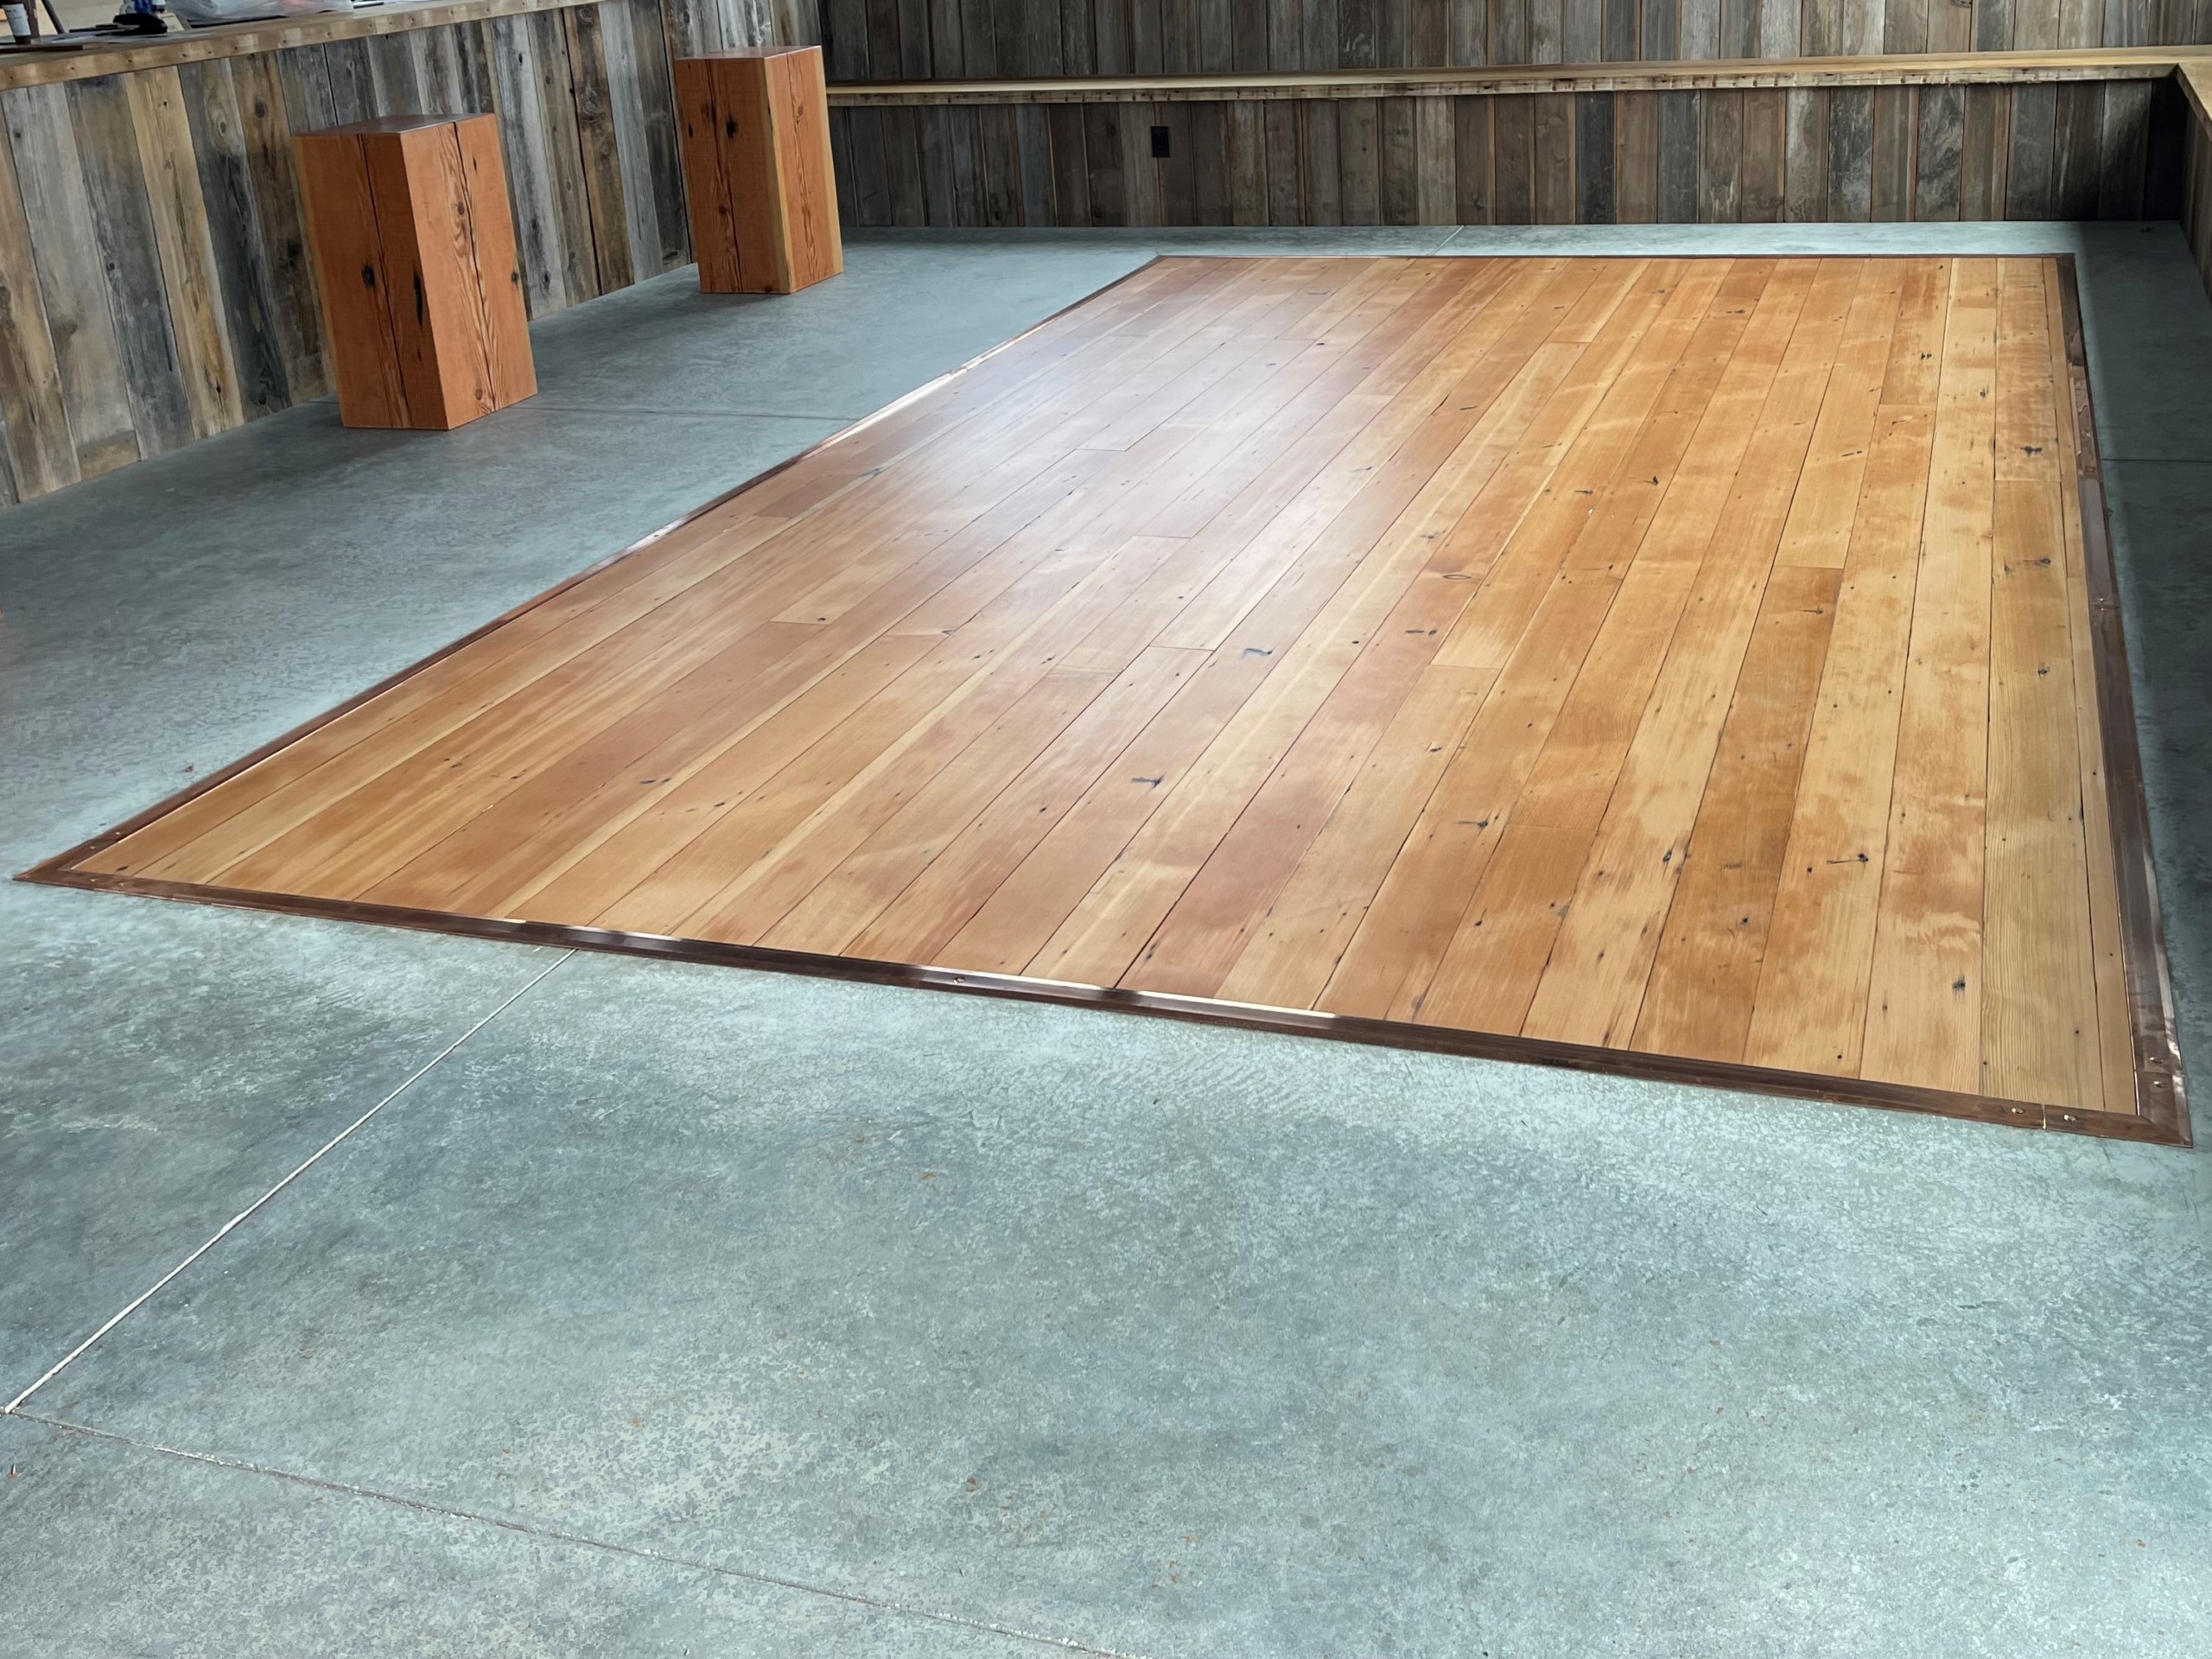 Reclaimed 1x4 Douglas fir vertical grain flooring